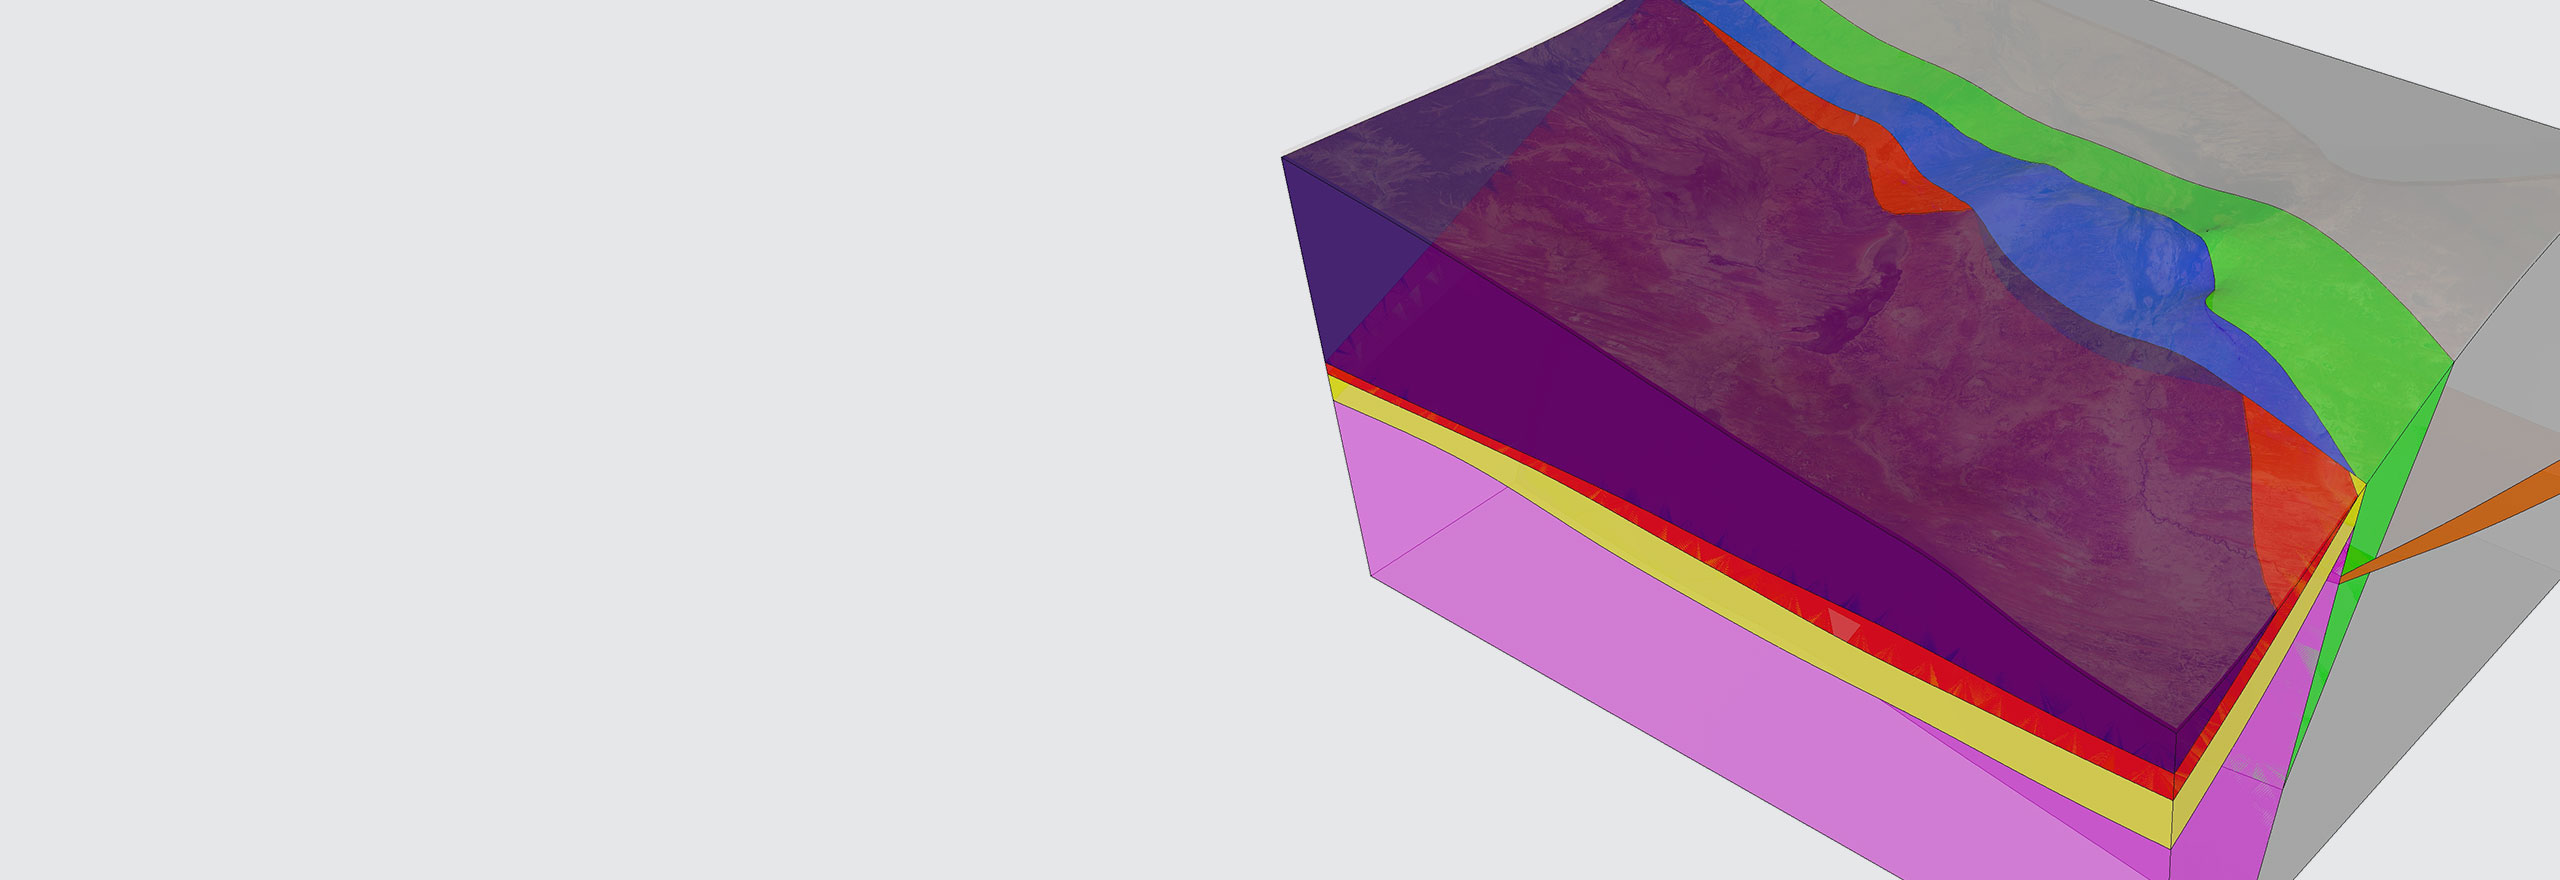 Modello geotecnico creato dal software Hexagon per l'indagine geotecnica delle miniere